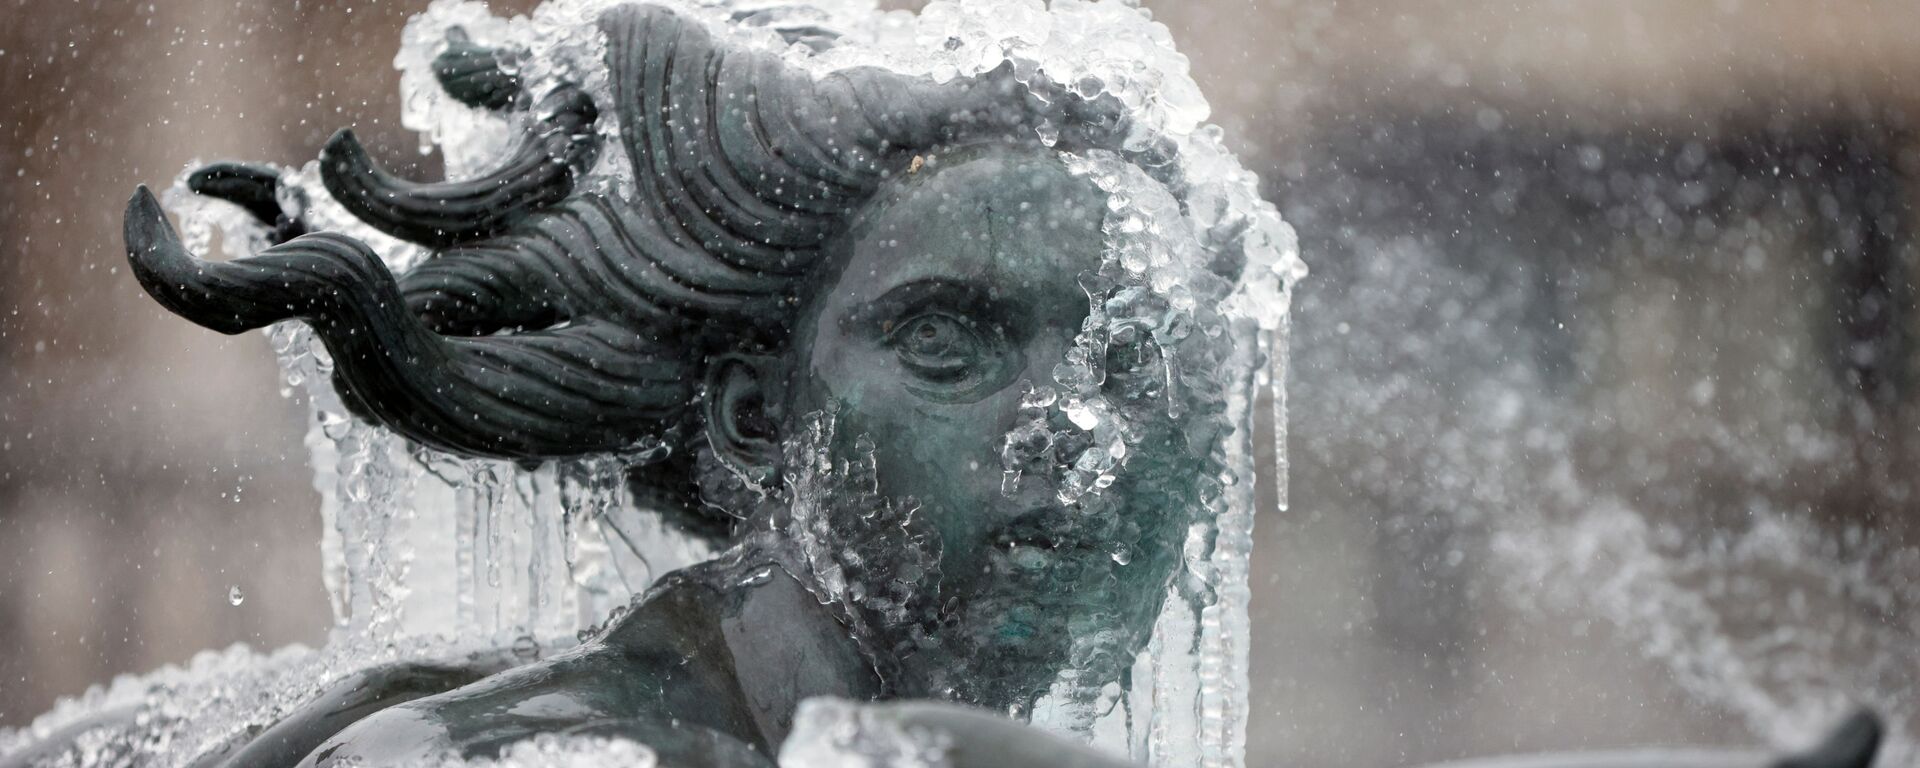 Покрытая льдом статуя на Трафальгарской площади в Лондоне  - Sputnik Moldova, 1920, 12.02.2021